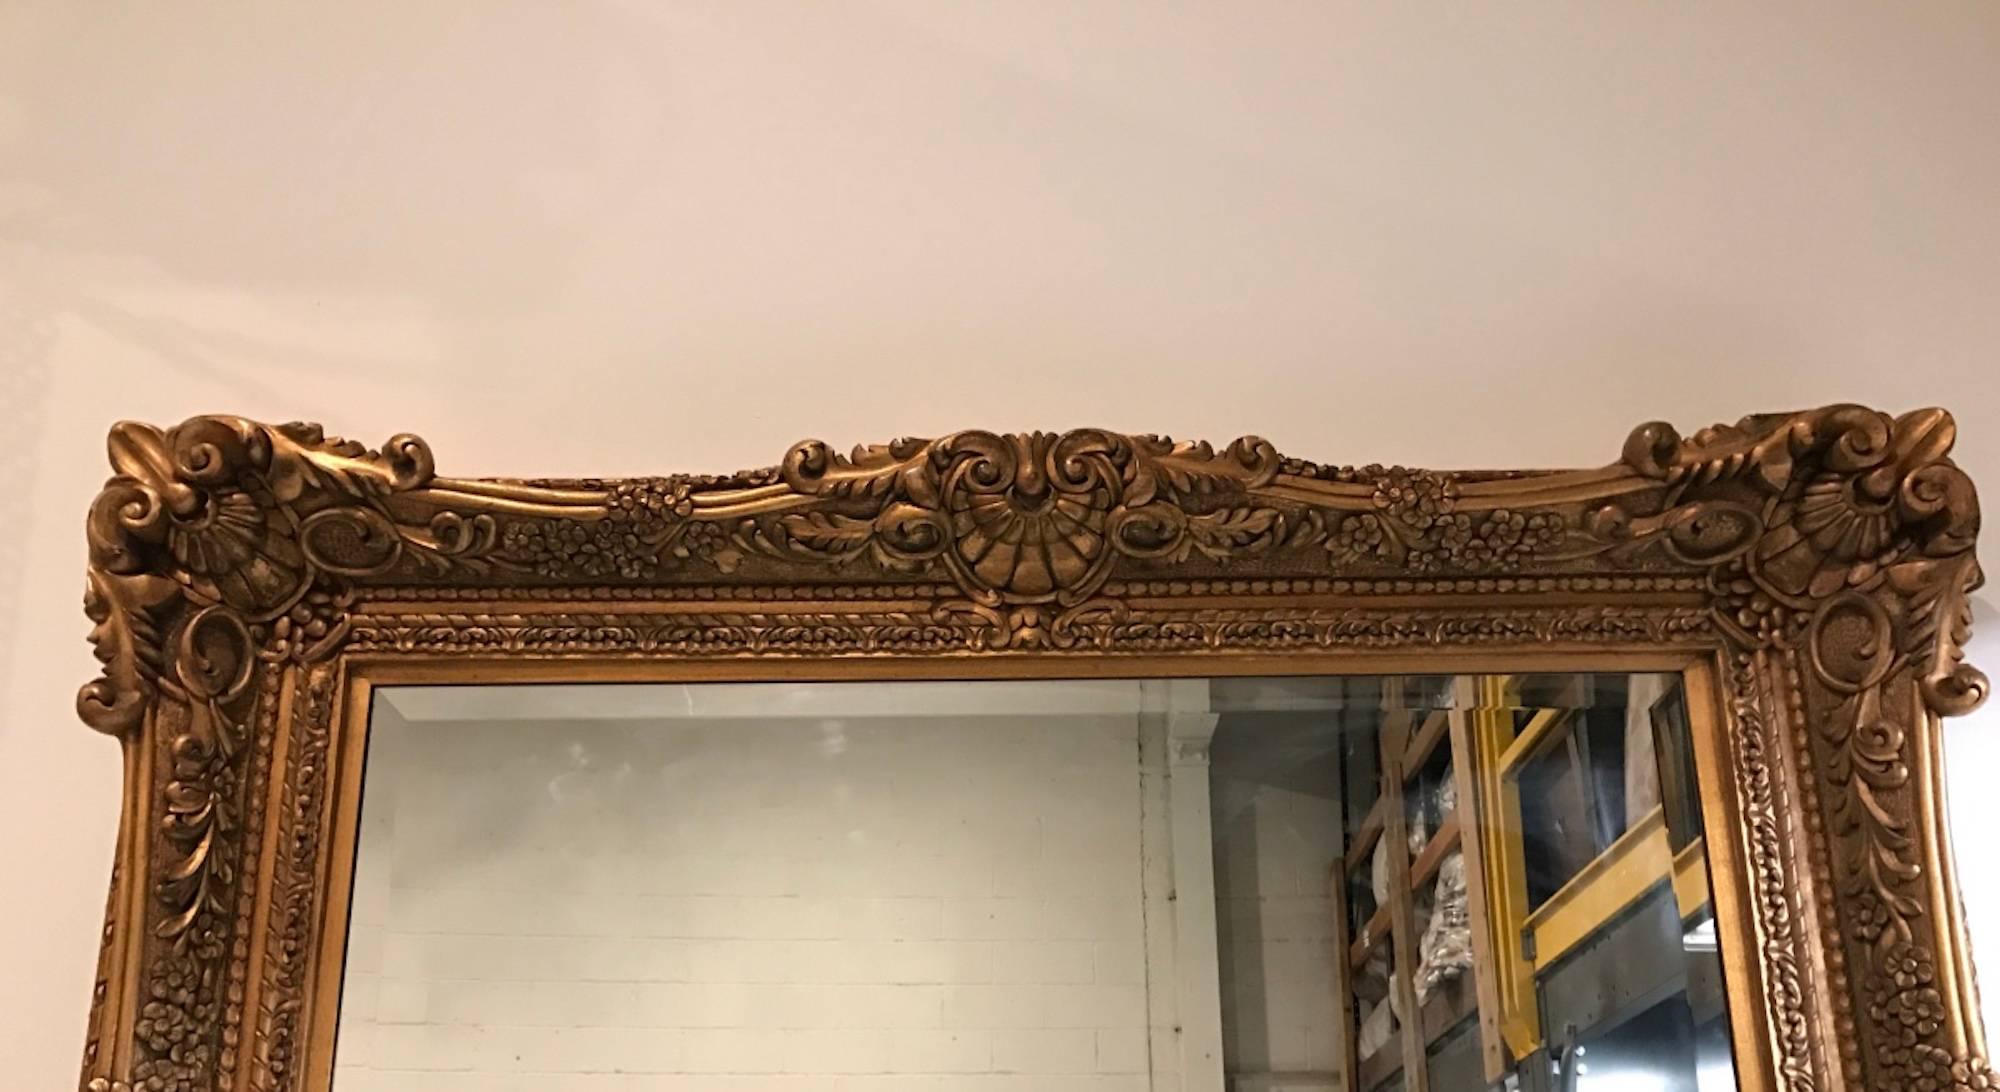 Grand miroir en bois doré avec des détails ornementaux sculptés à la main. Ayant un miroir biseauté.